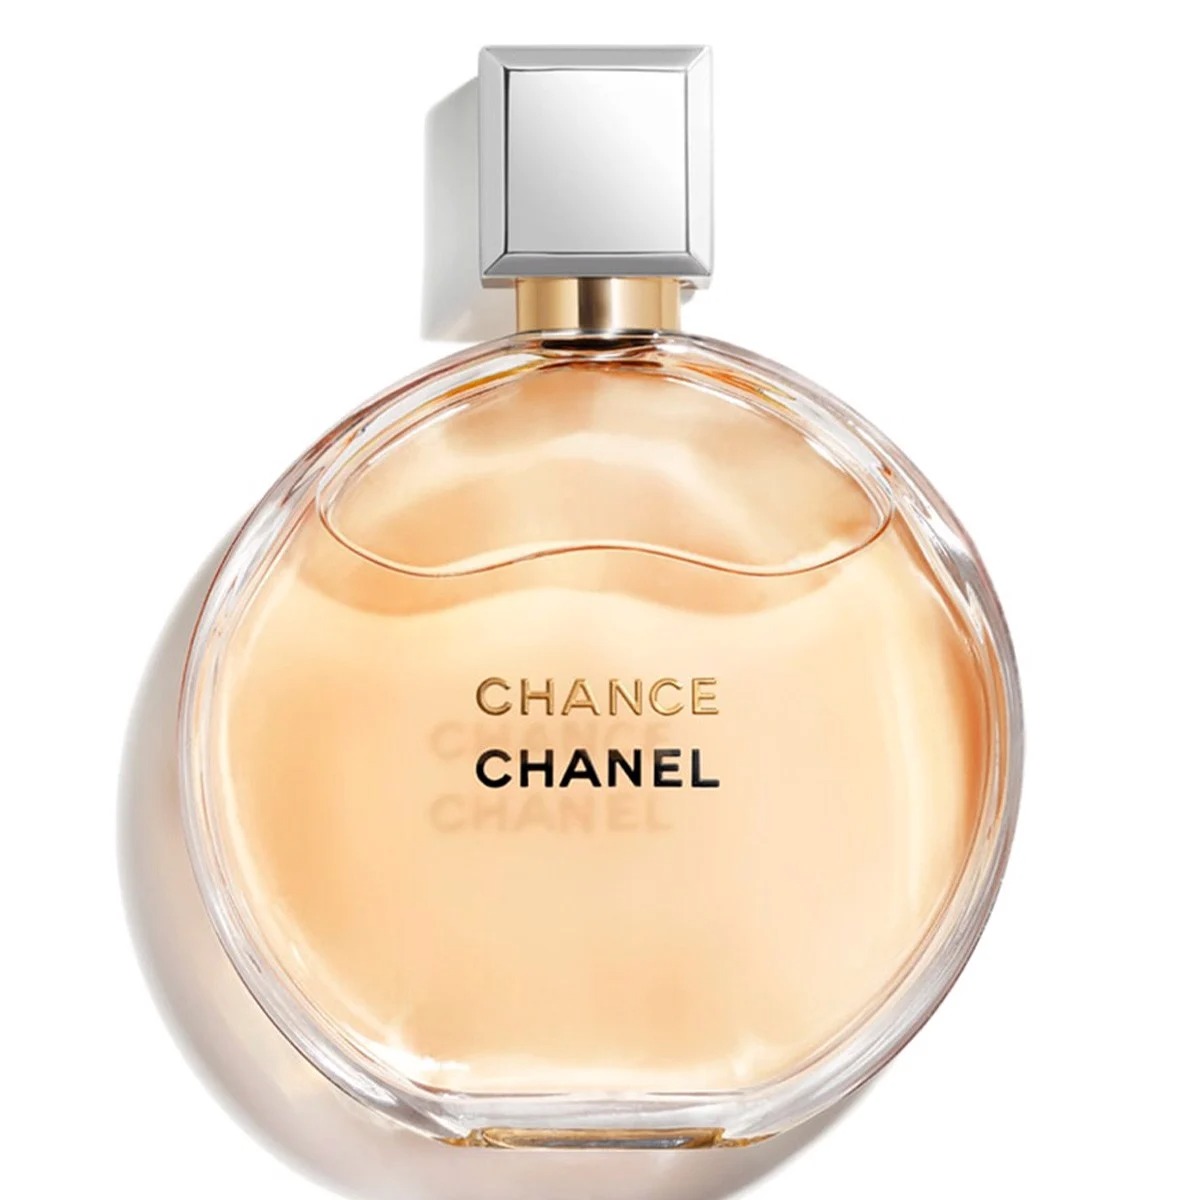 Nước hoa nam Bleu de Chanel 50ml chính hãng giá rẻ